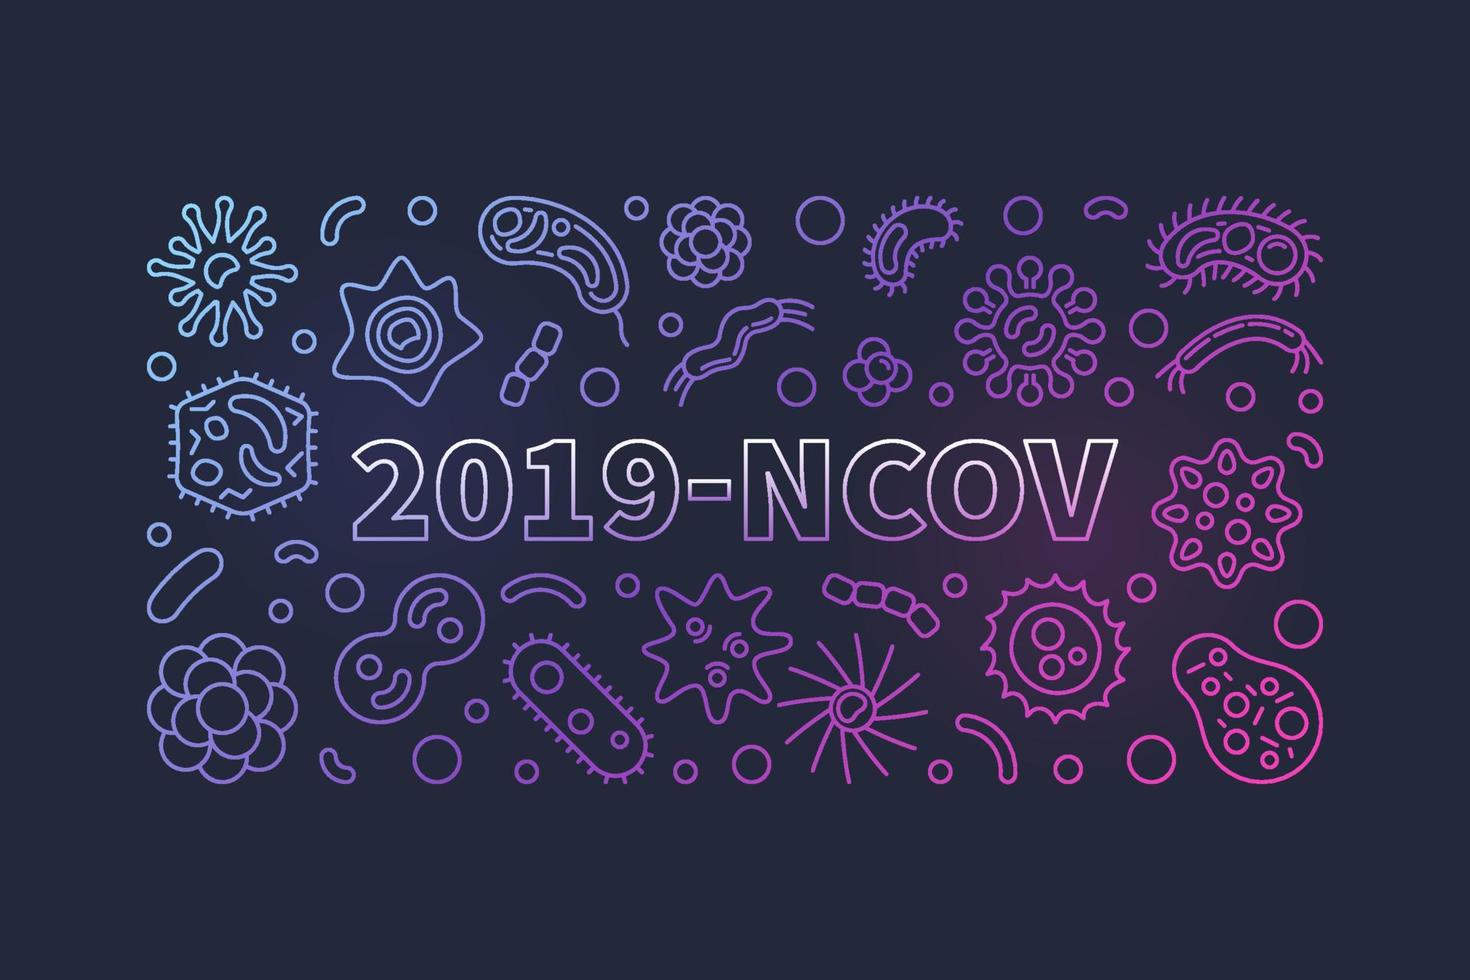 2019-ncov vector concept bannière colorée linéaire ou illustration